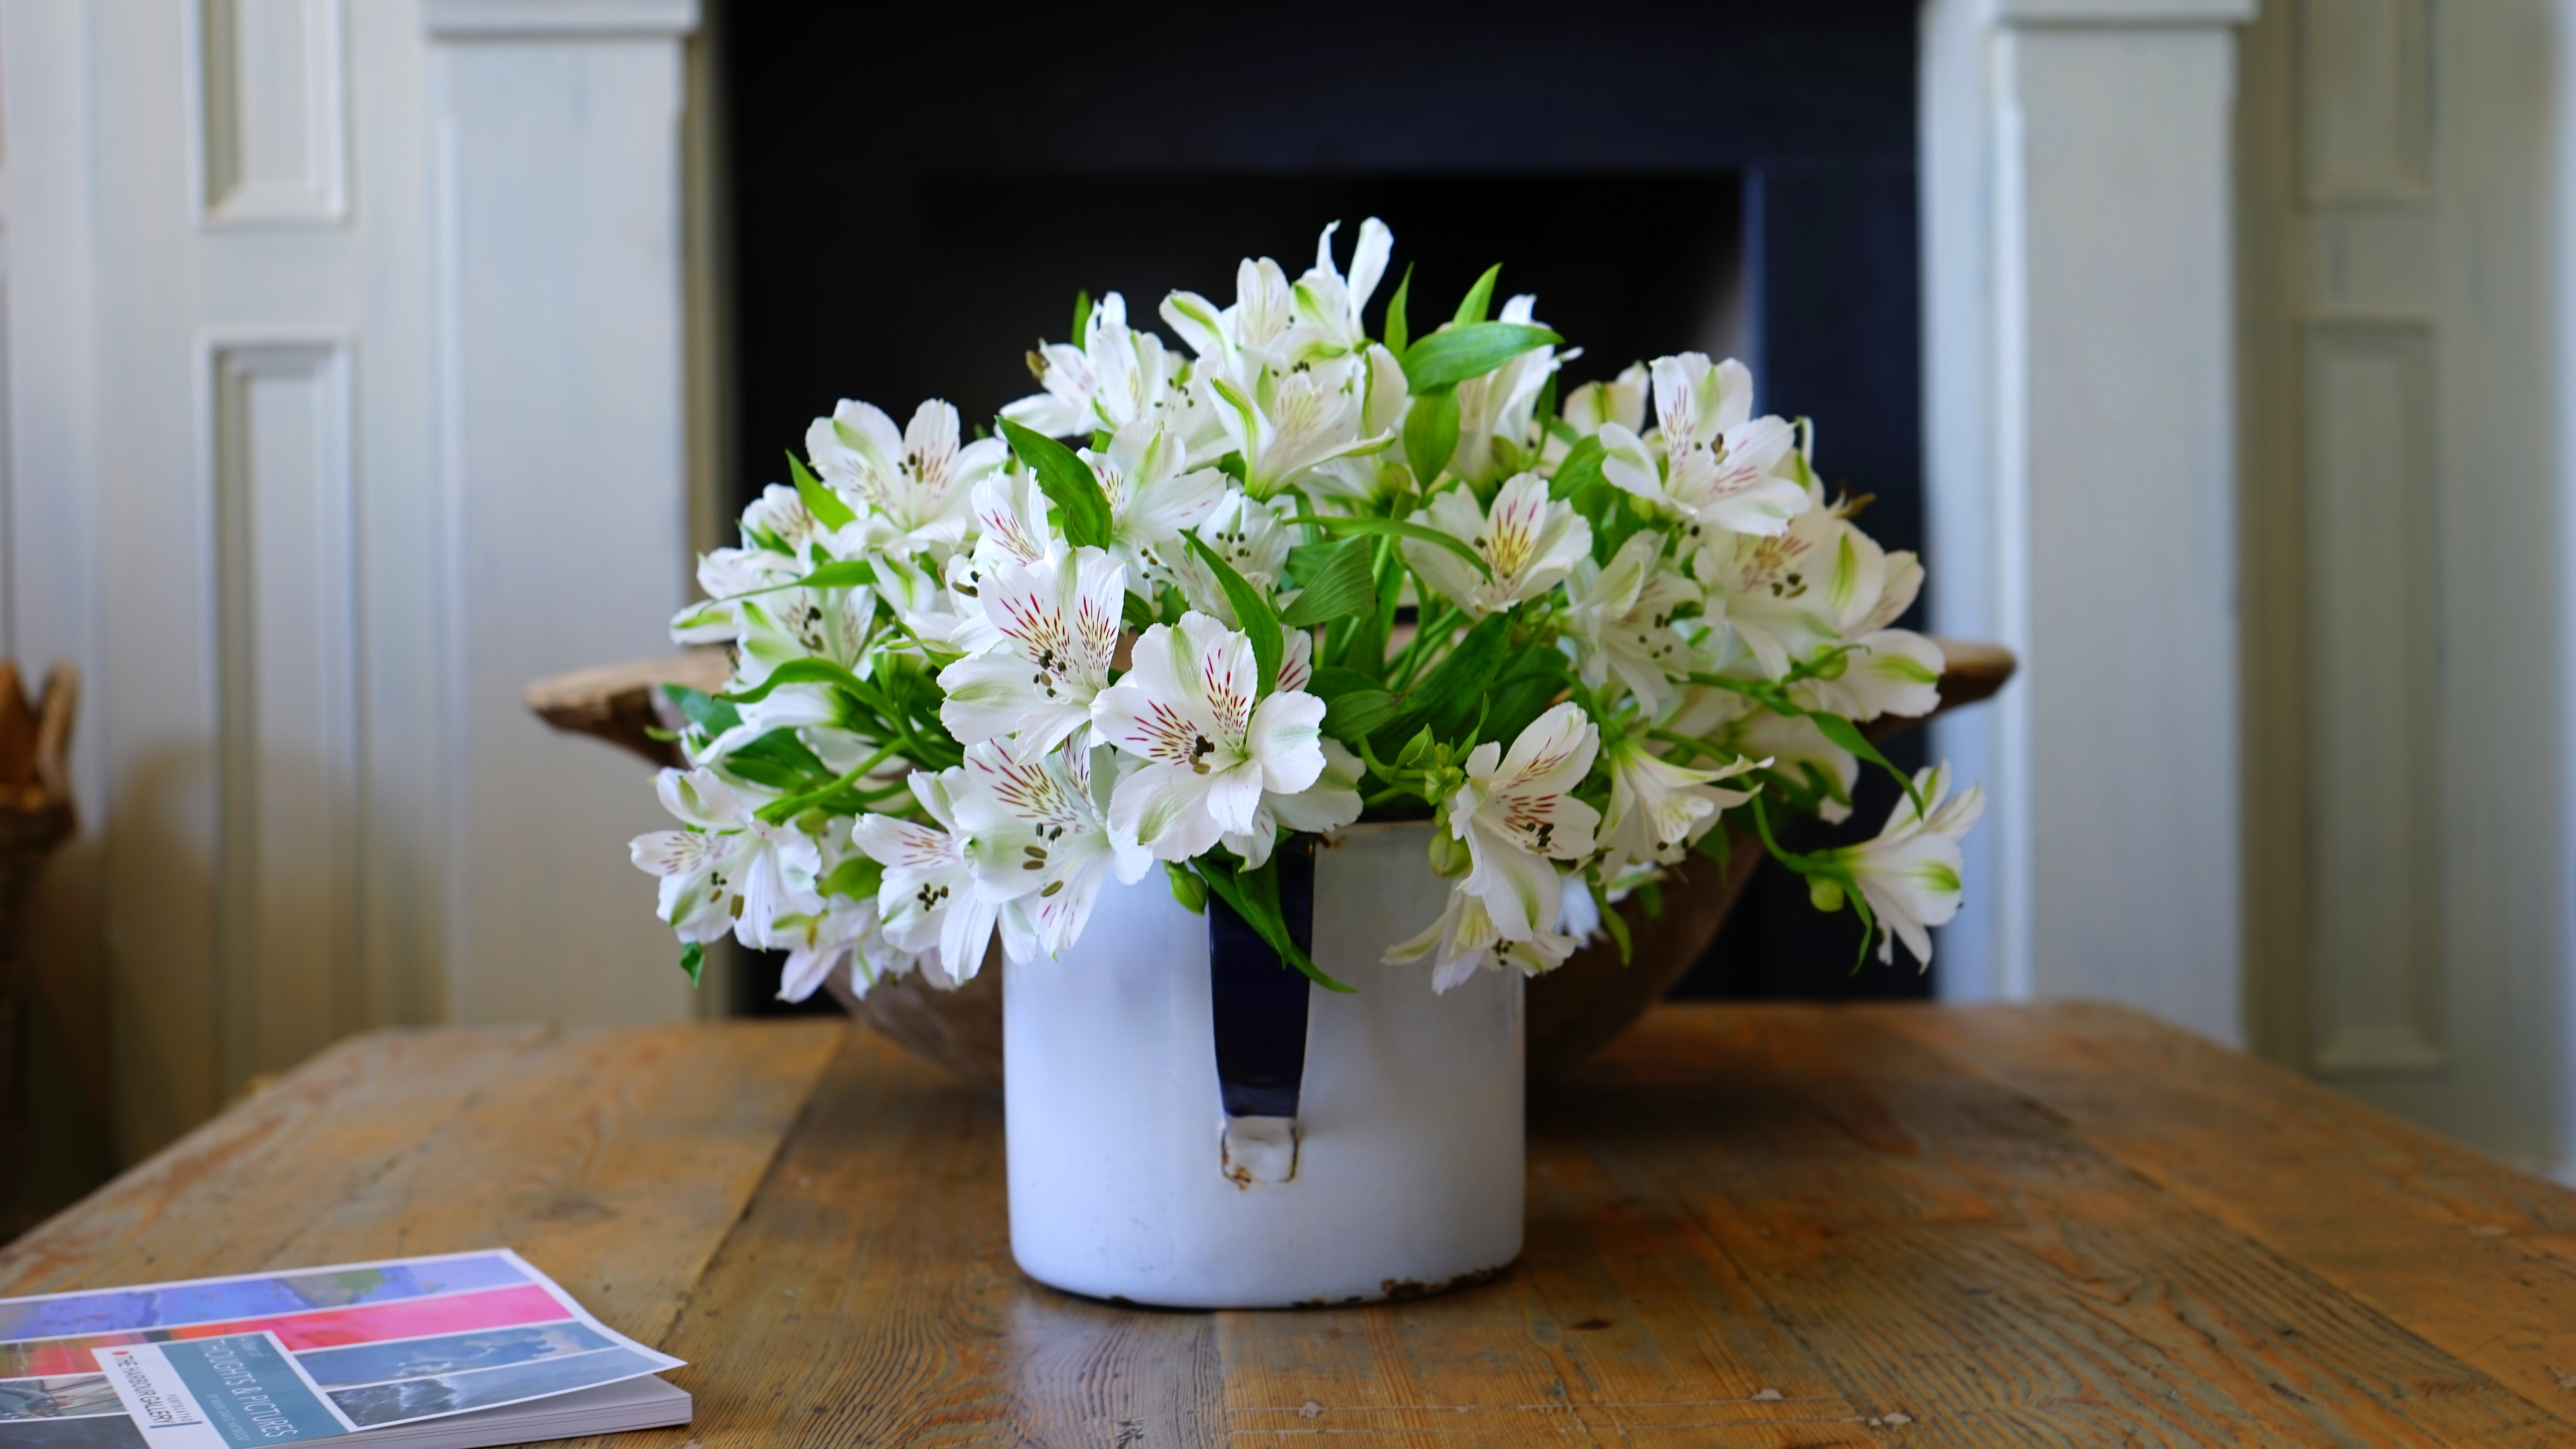 White petaled flower on white flower vase photo